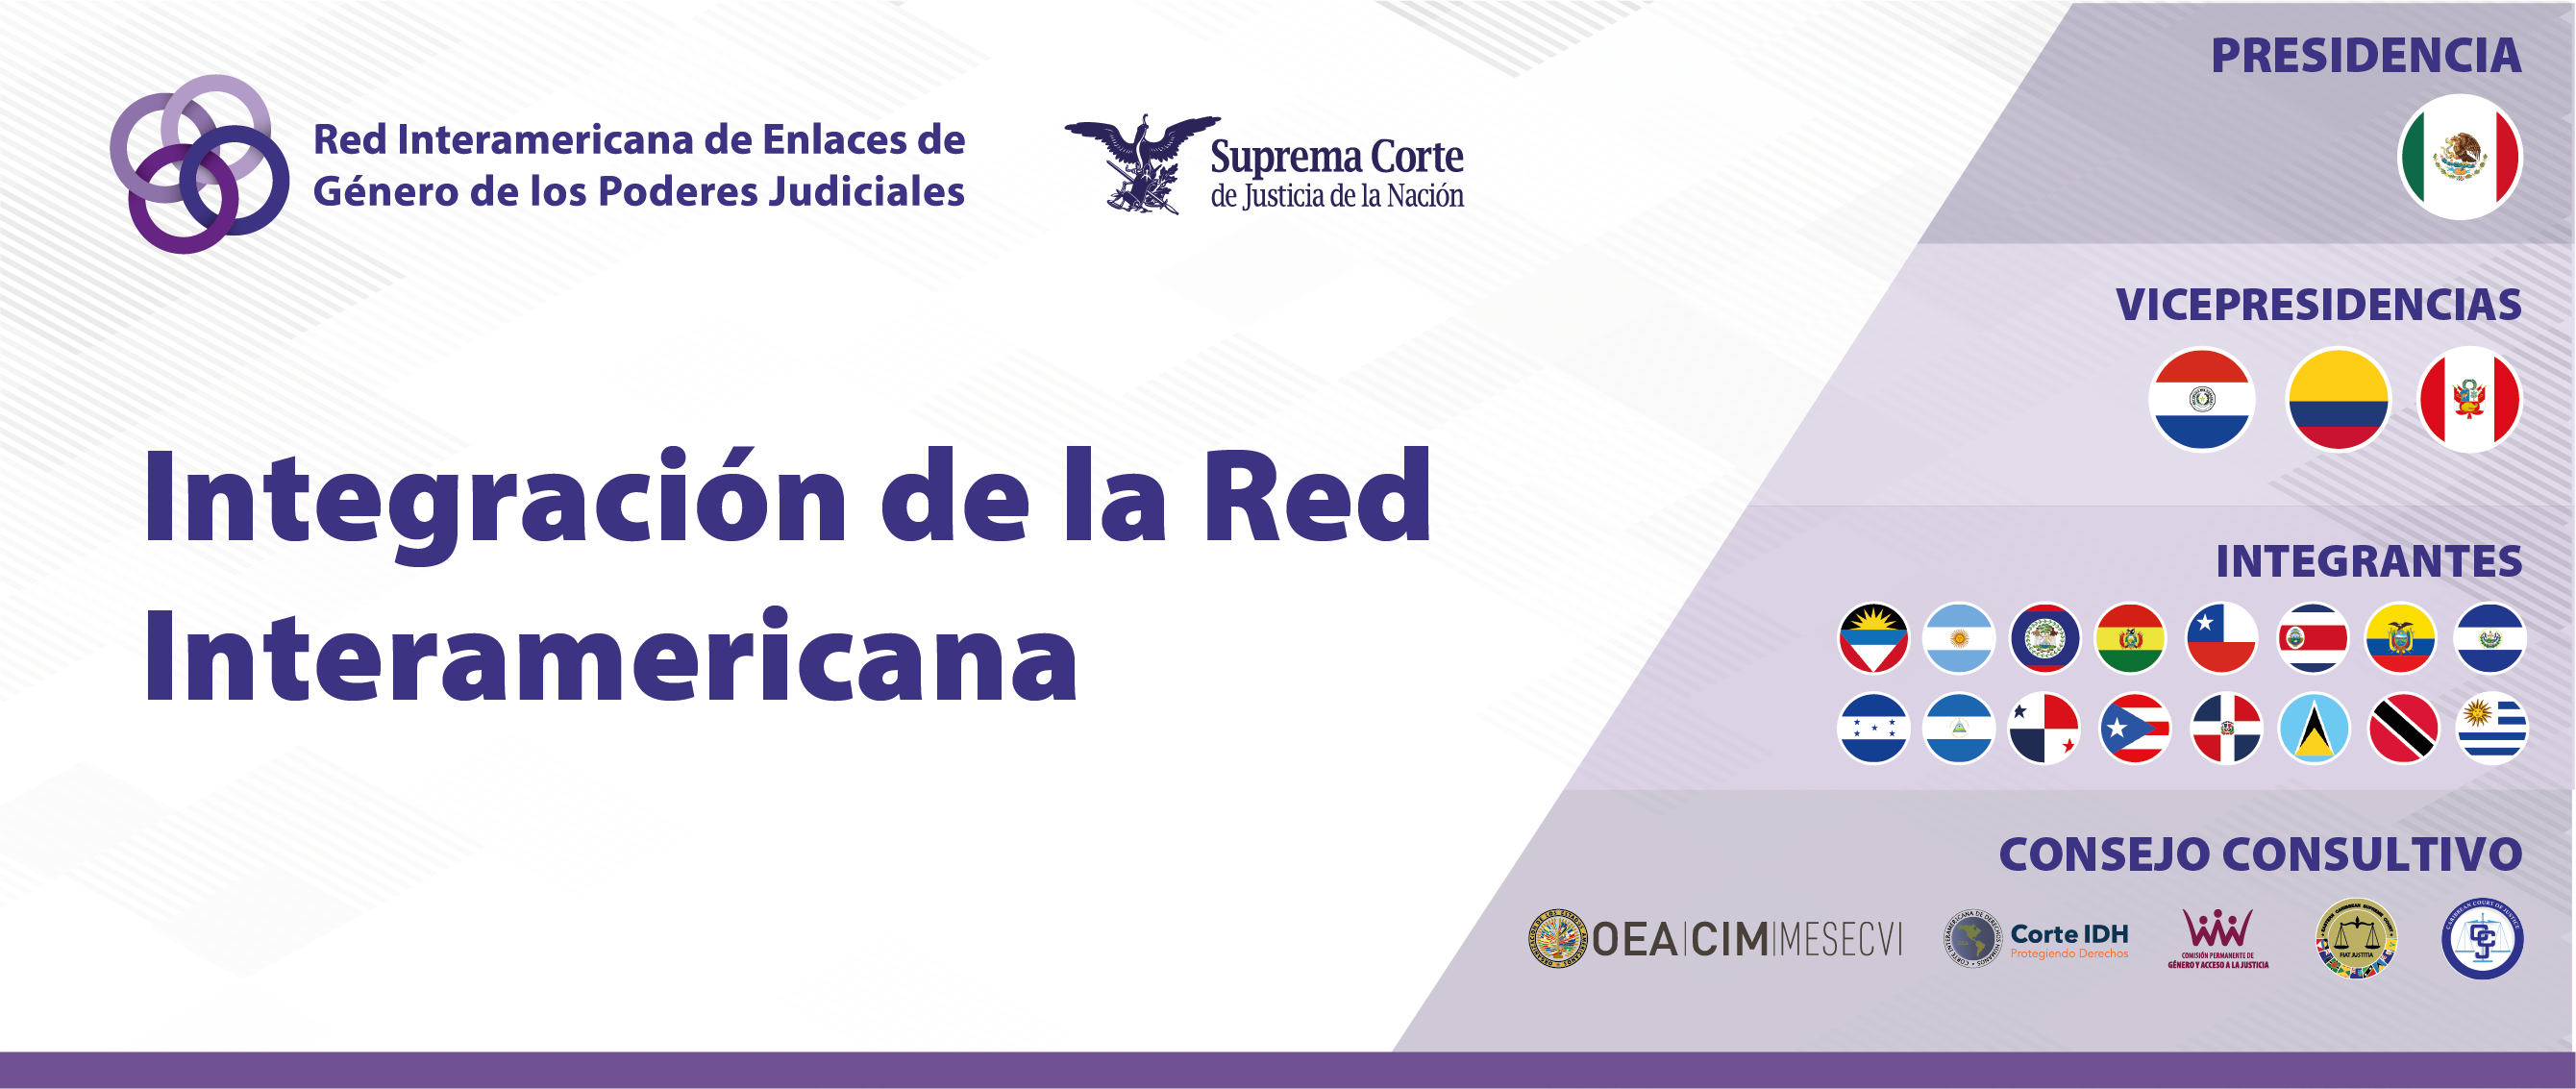 Red Interamericana de Enlaces de Género de los Poderes  Judiciales